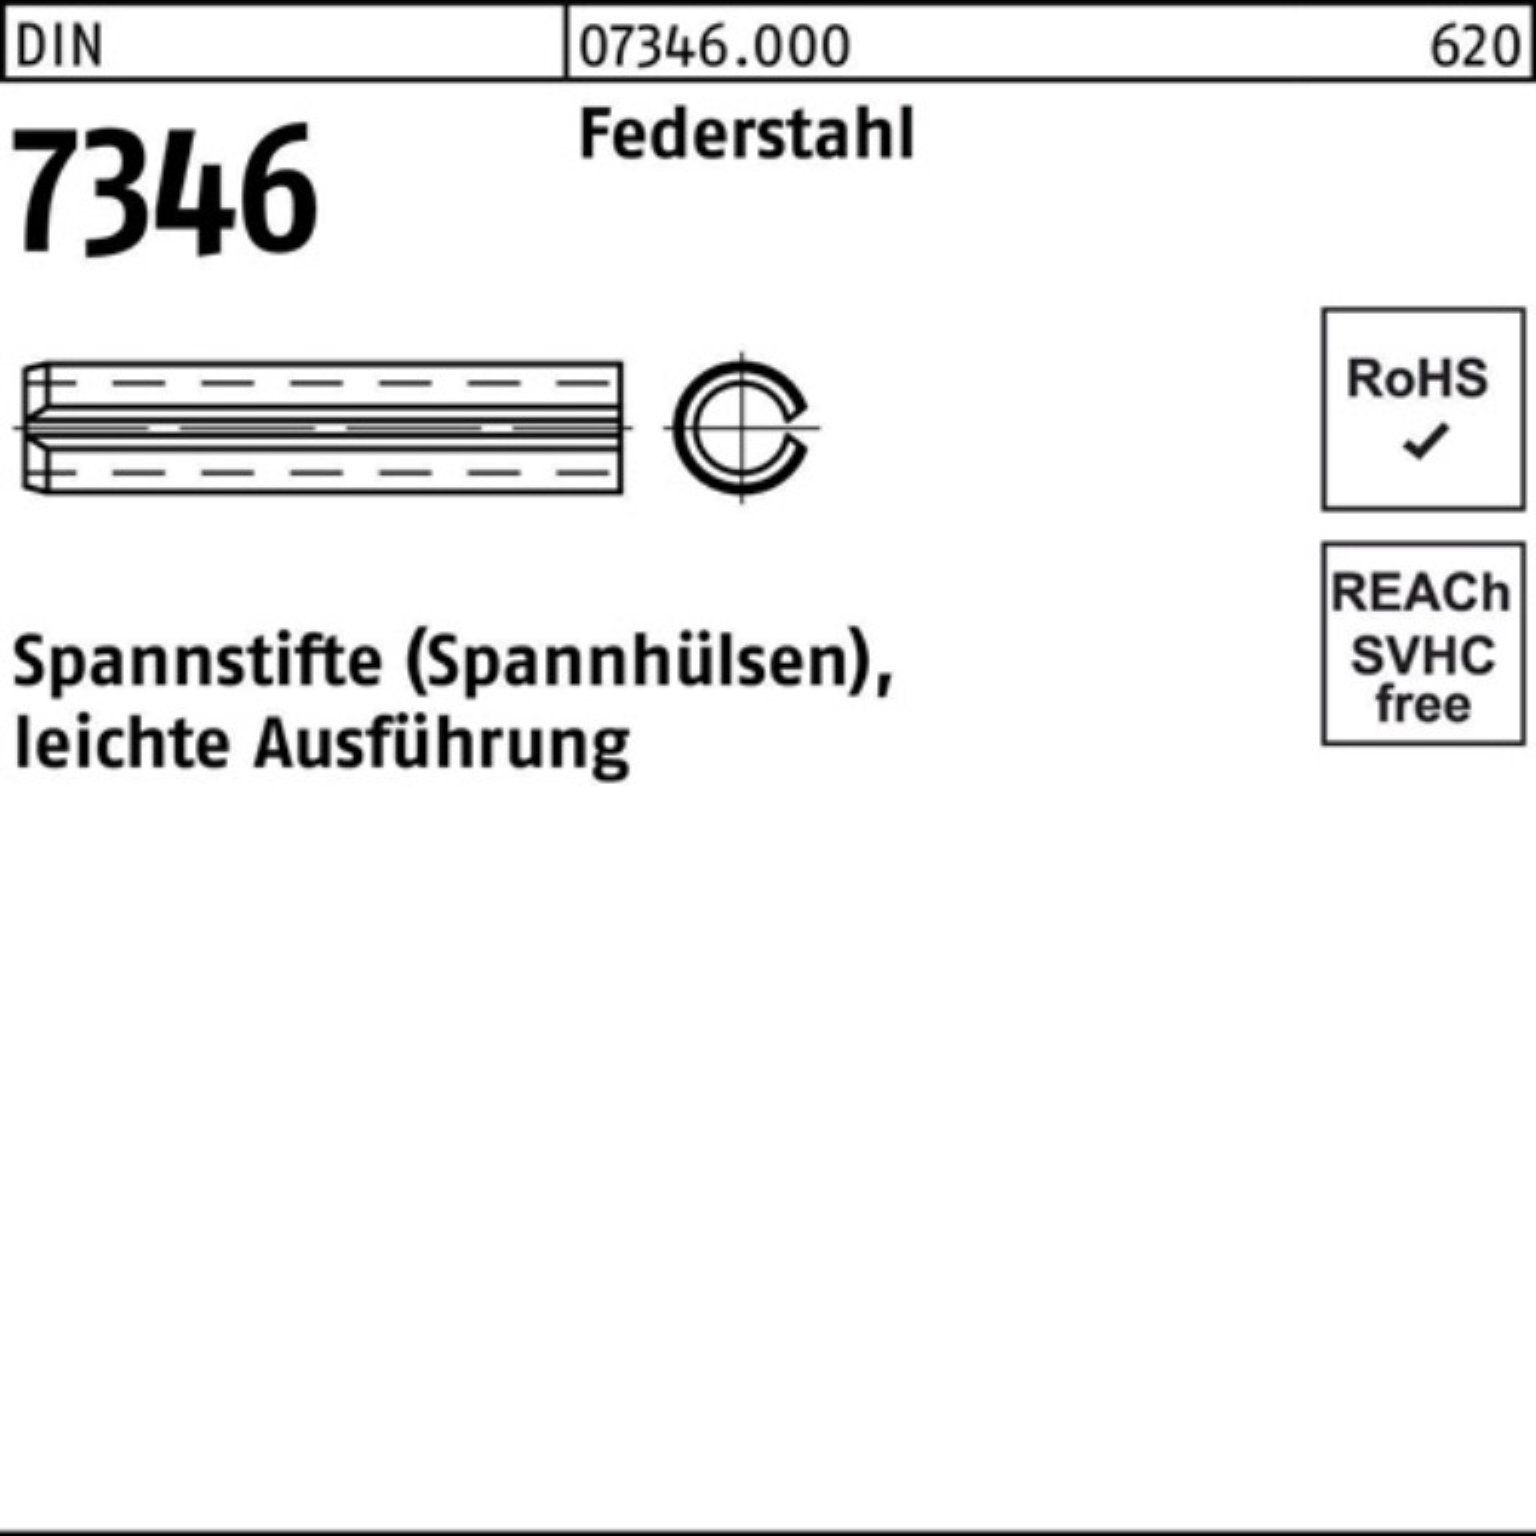 Reyher Spannstift 200er DIN Spannstift 26 7346/ISO leichte Ausf Federstahl Pack 3x 13337